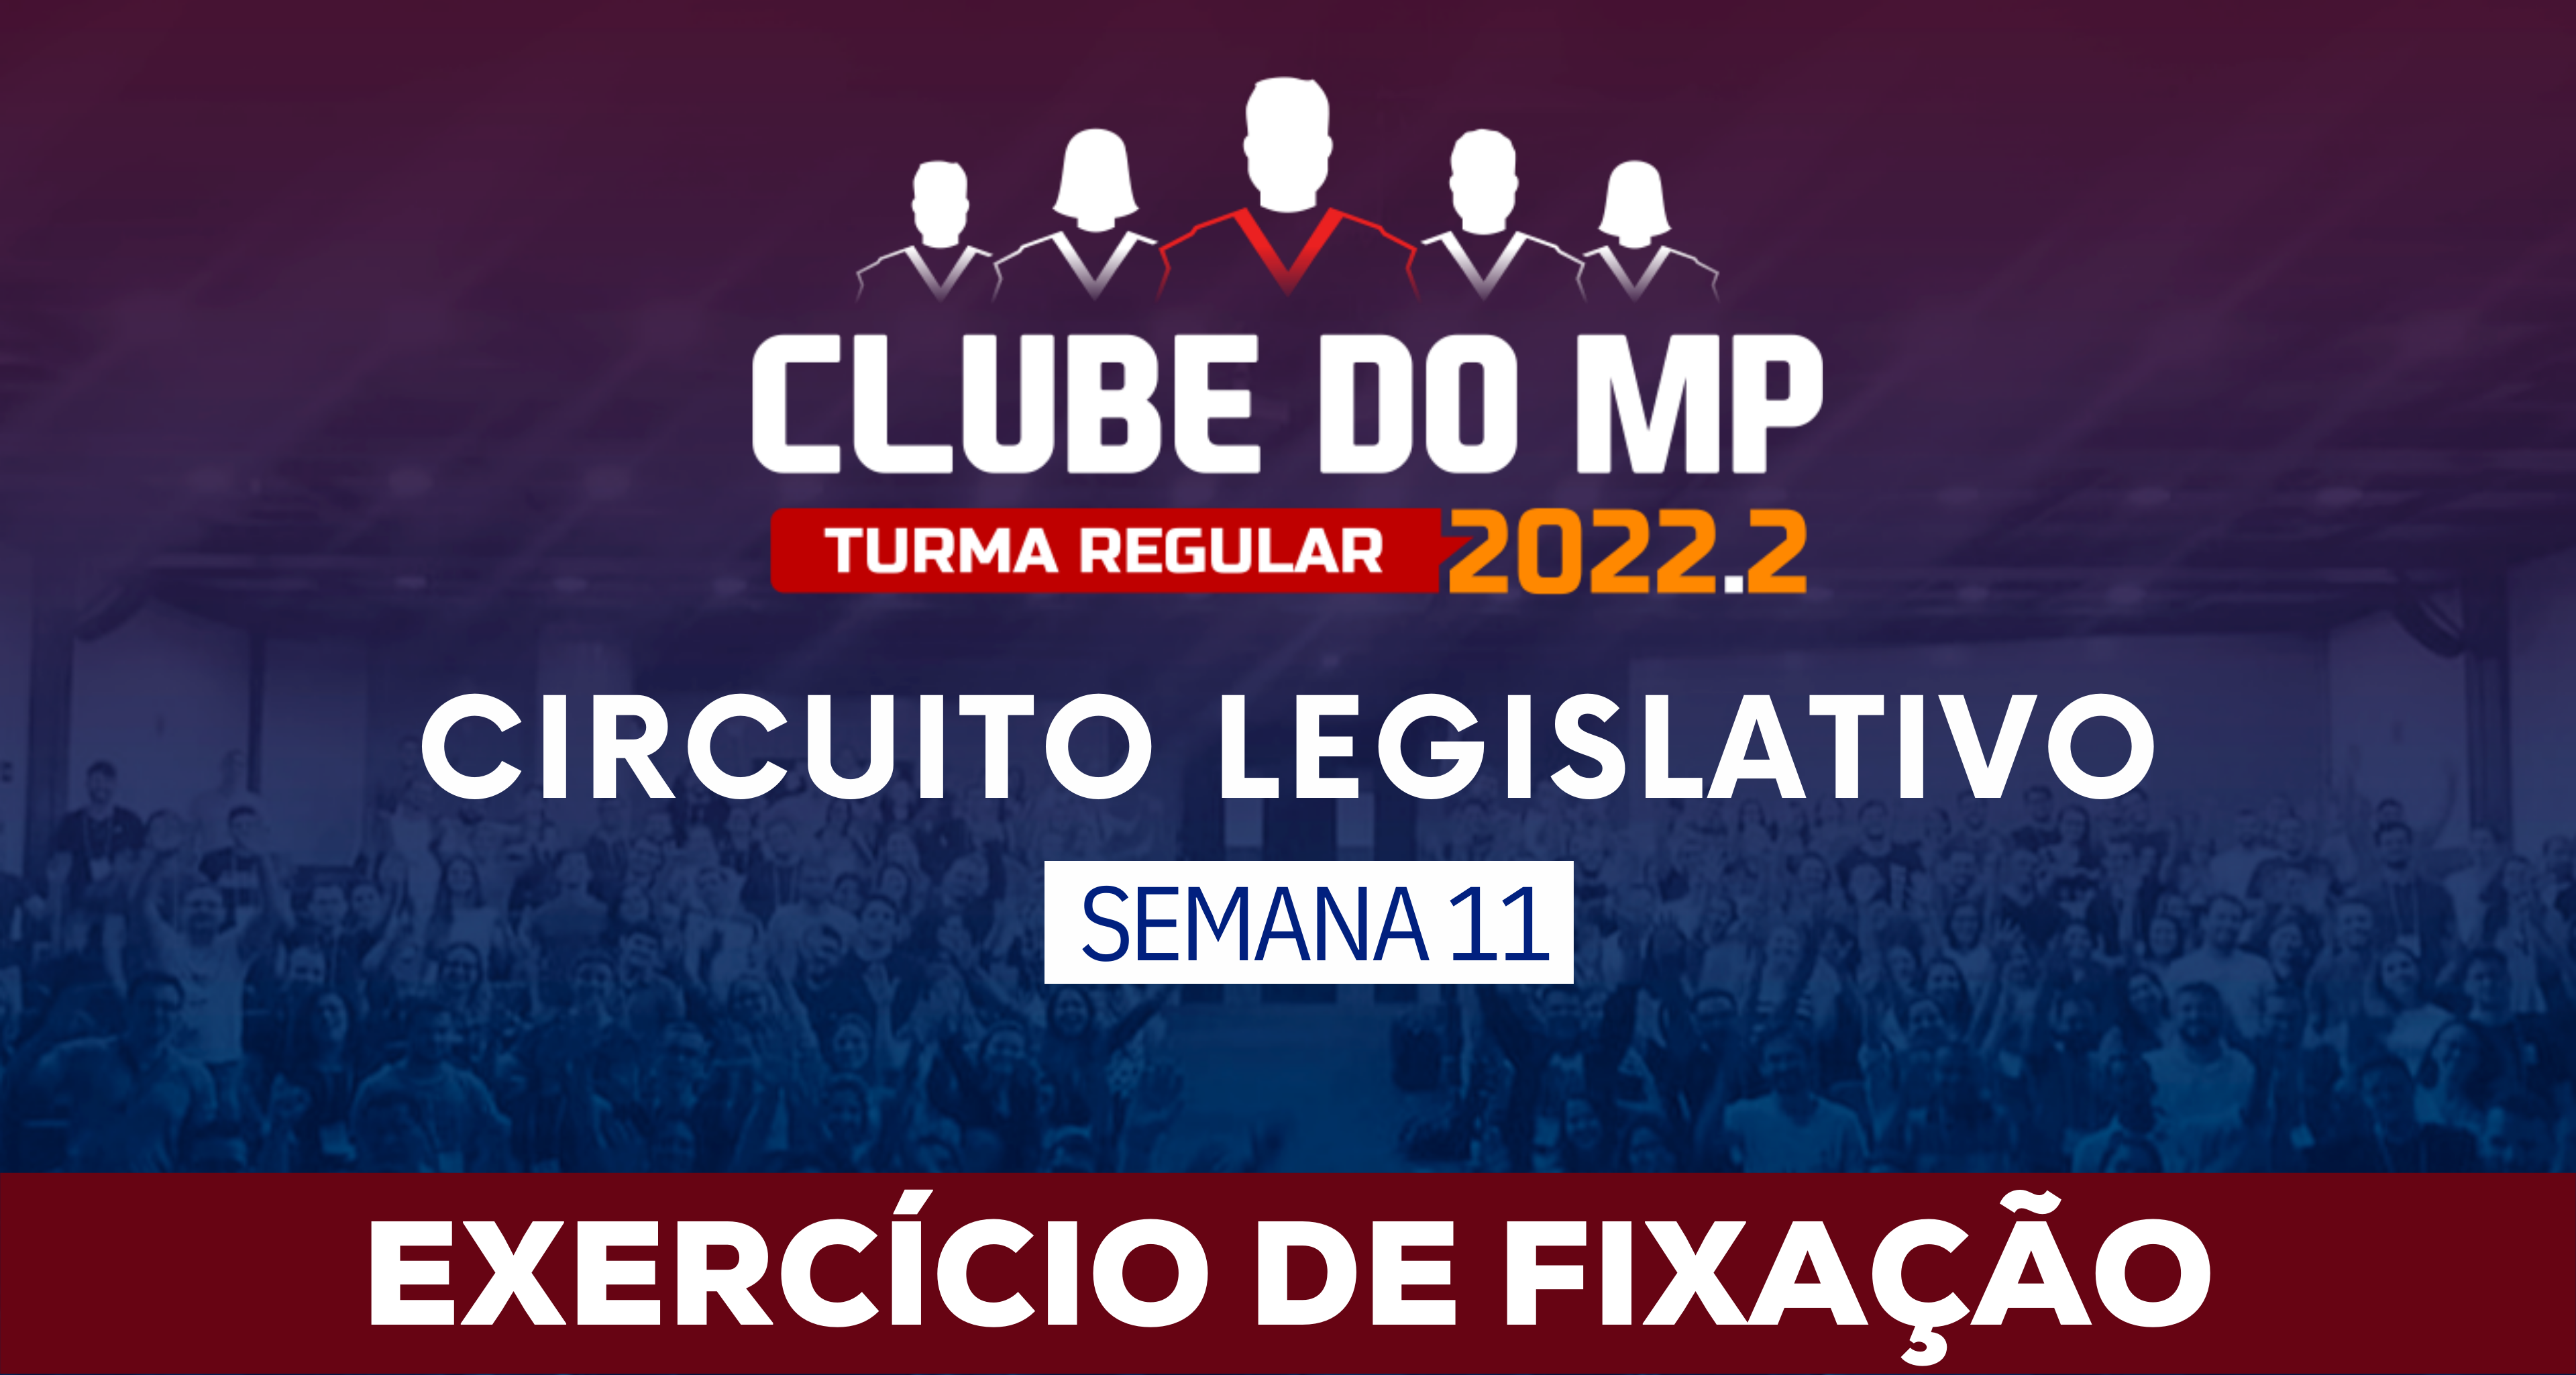 Circuito Legislativo 2022.2 (Clube do MP - Semana 11)